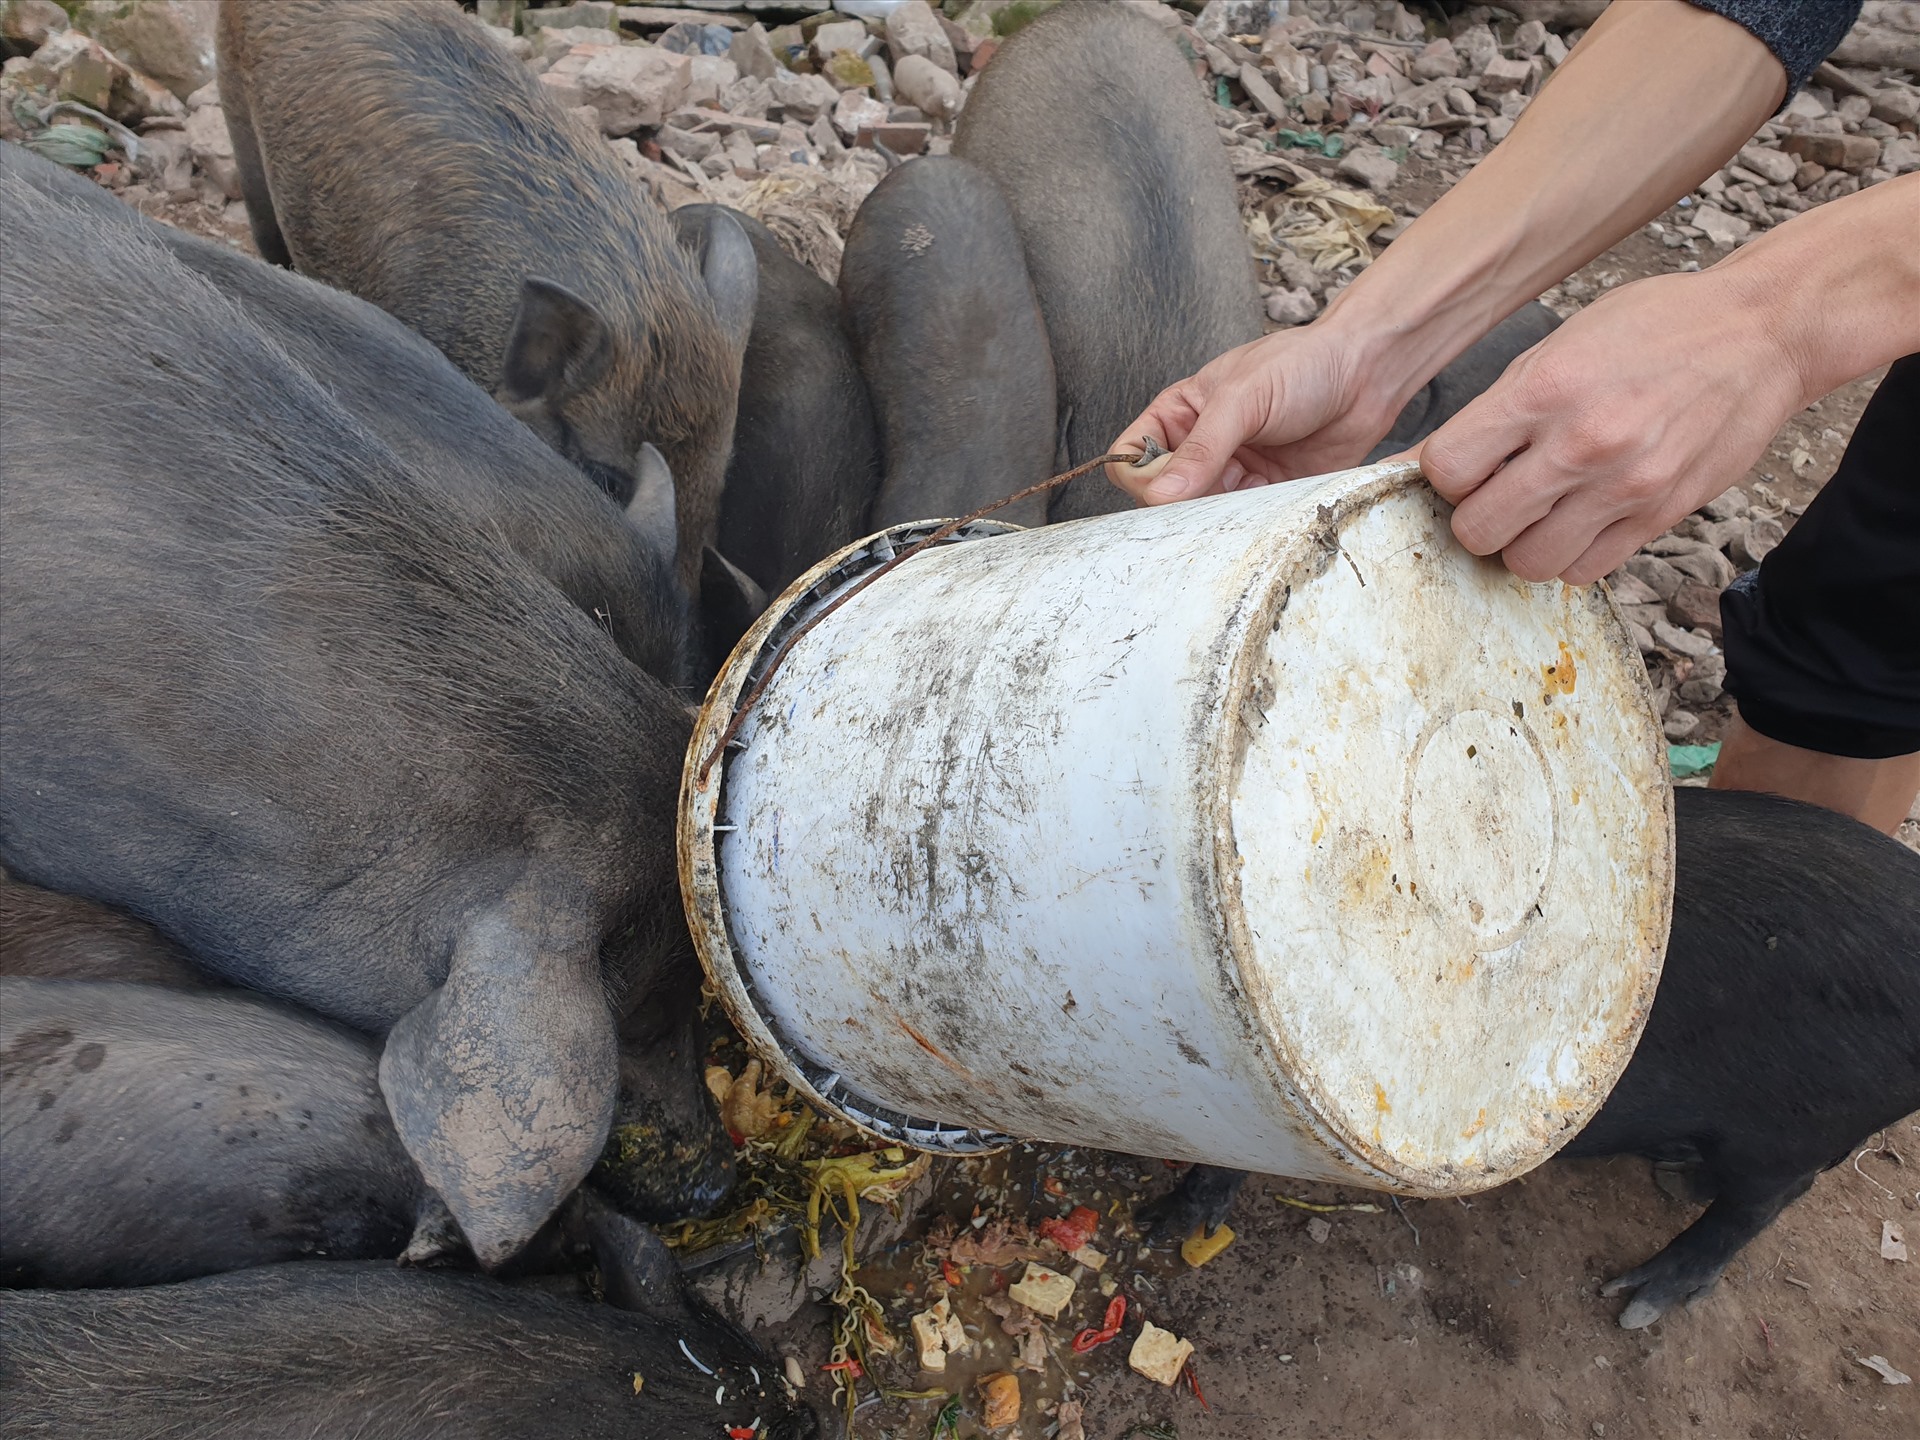 “Lợn mán càng nhỏ thì càng thơm thịt, lợn chỉ khoảng 10–15 kg là ngon nhất và dễ thích nghi với môi trường“, anh Linh nói.